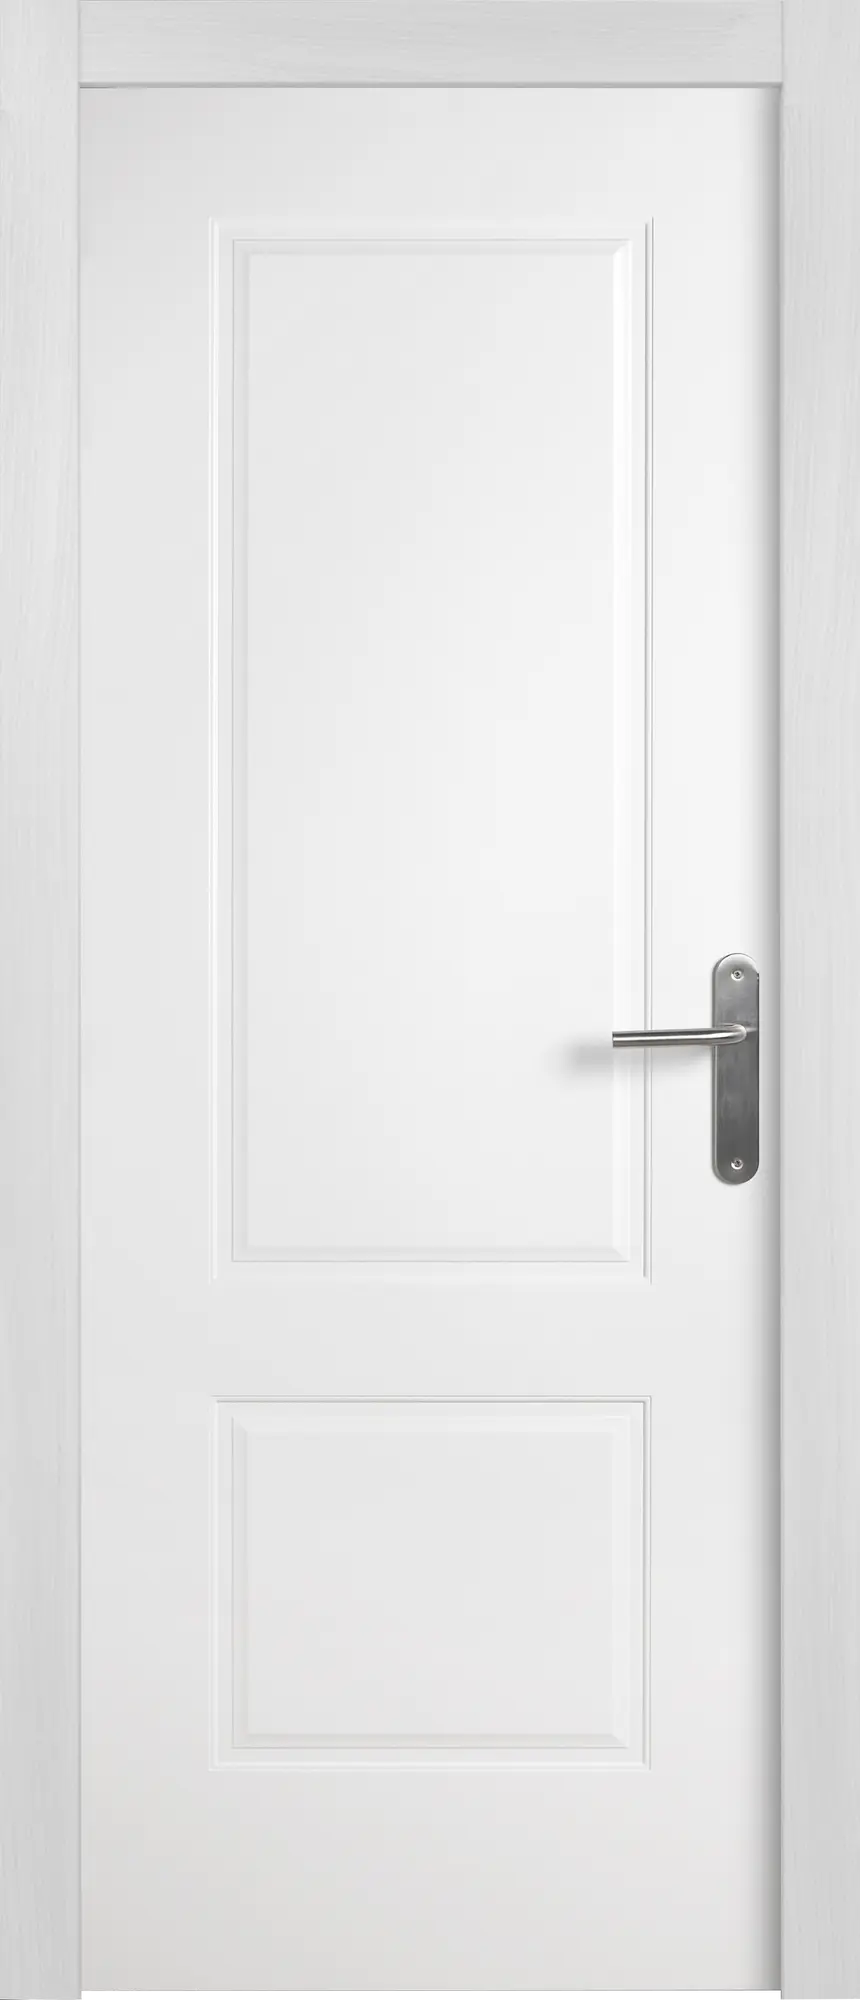 Puerta marsella plus blanco apertura izquierda 9x62.5cm